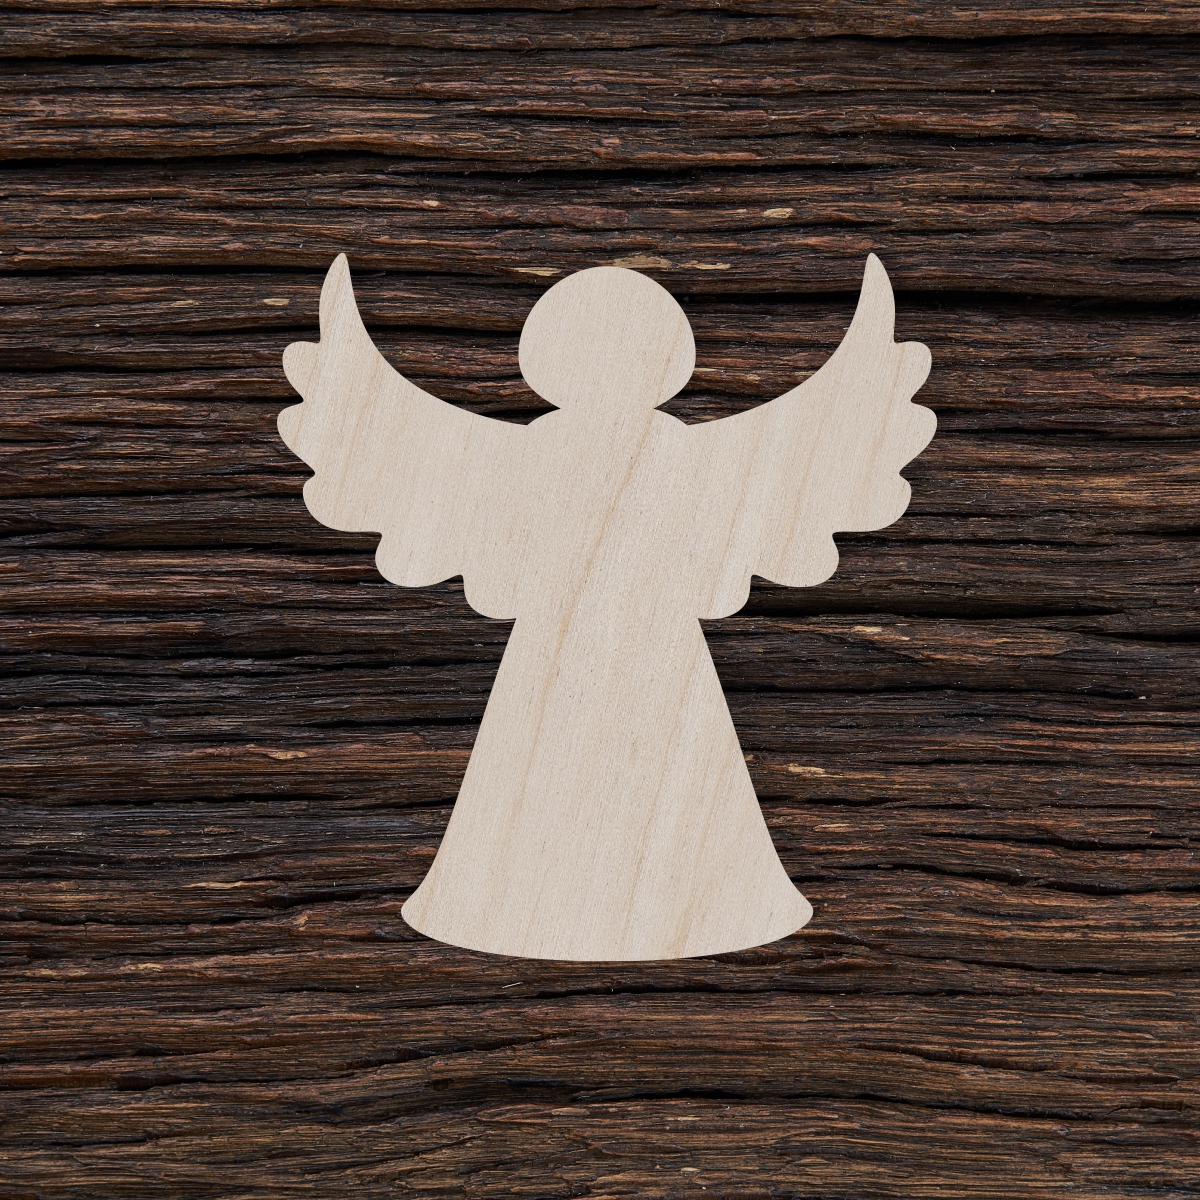 6Kalėdų eglutės angelas - medinis gaminys, pjautas lazeriu - dekoravimui ir dažymui